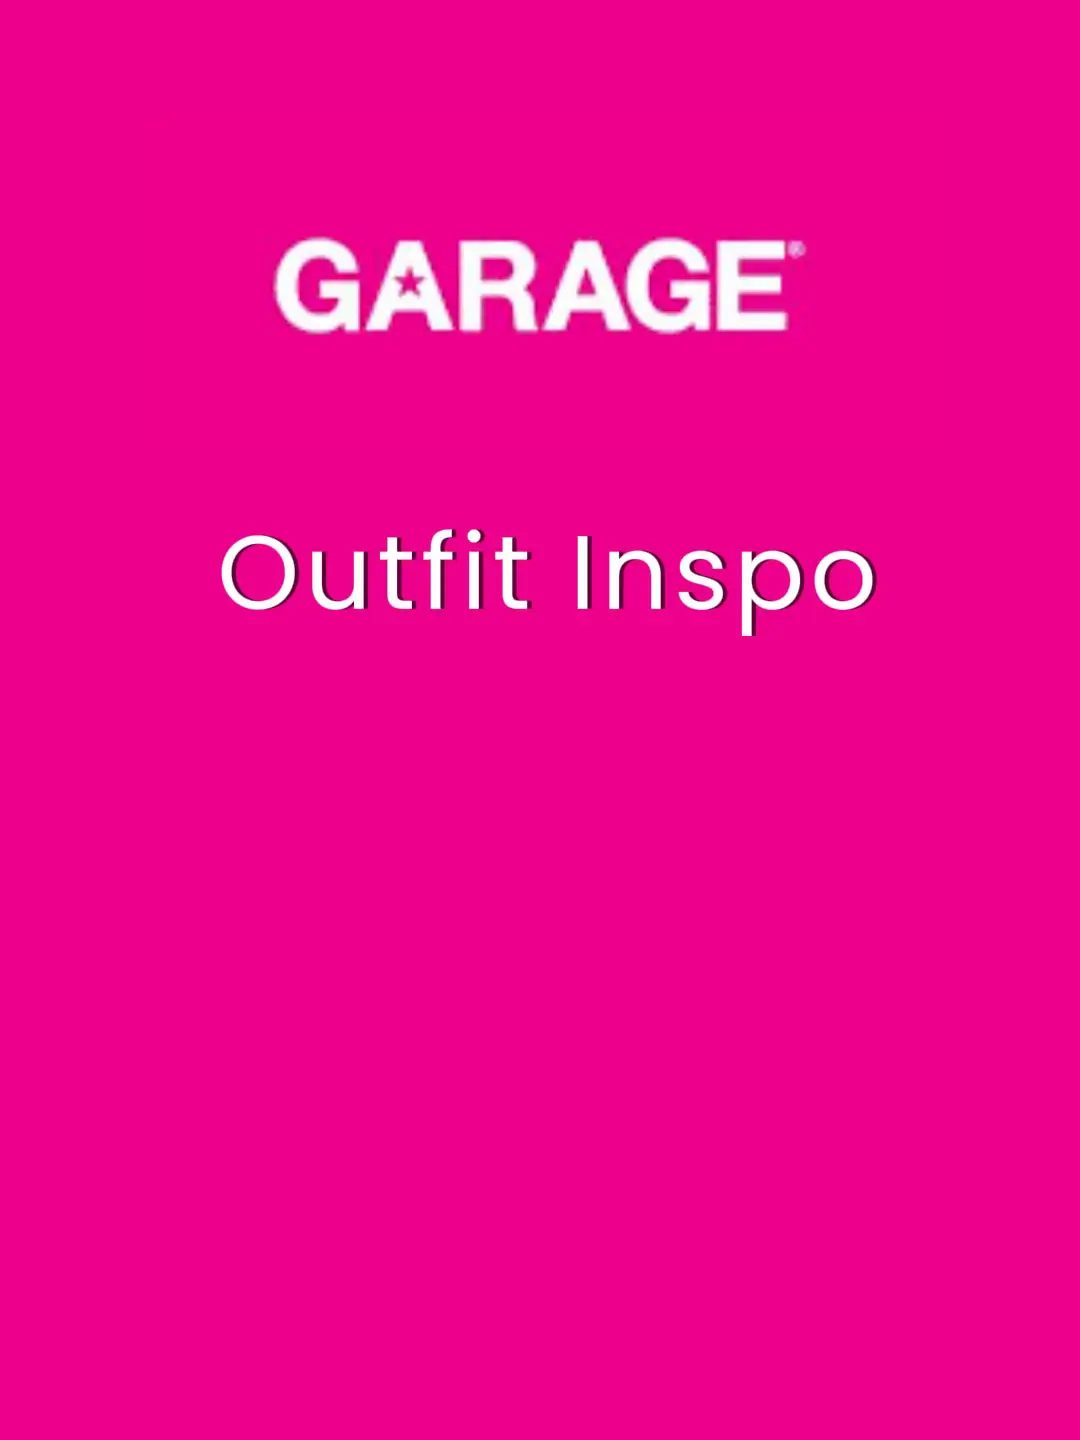 Garage Clothing Reviews - 104 Reviews of Garageclothing.com